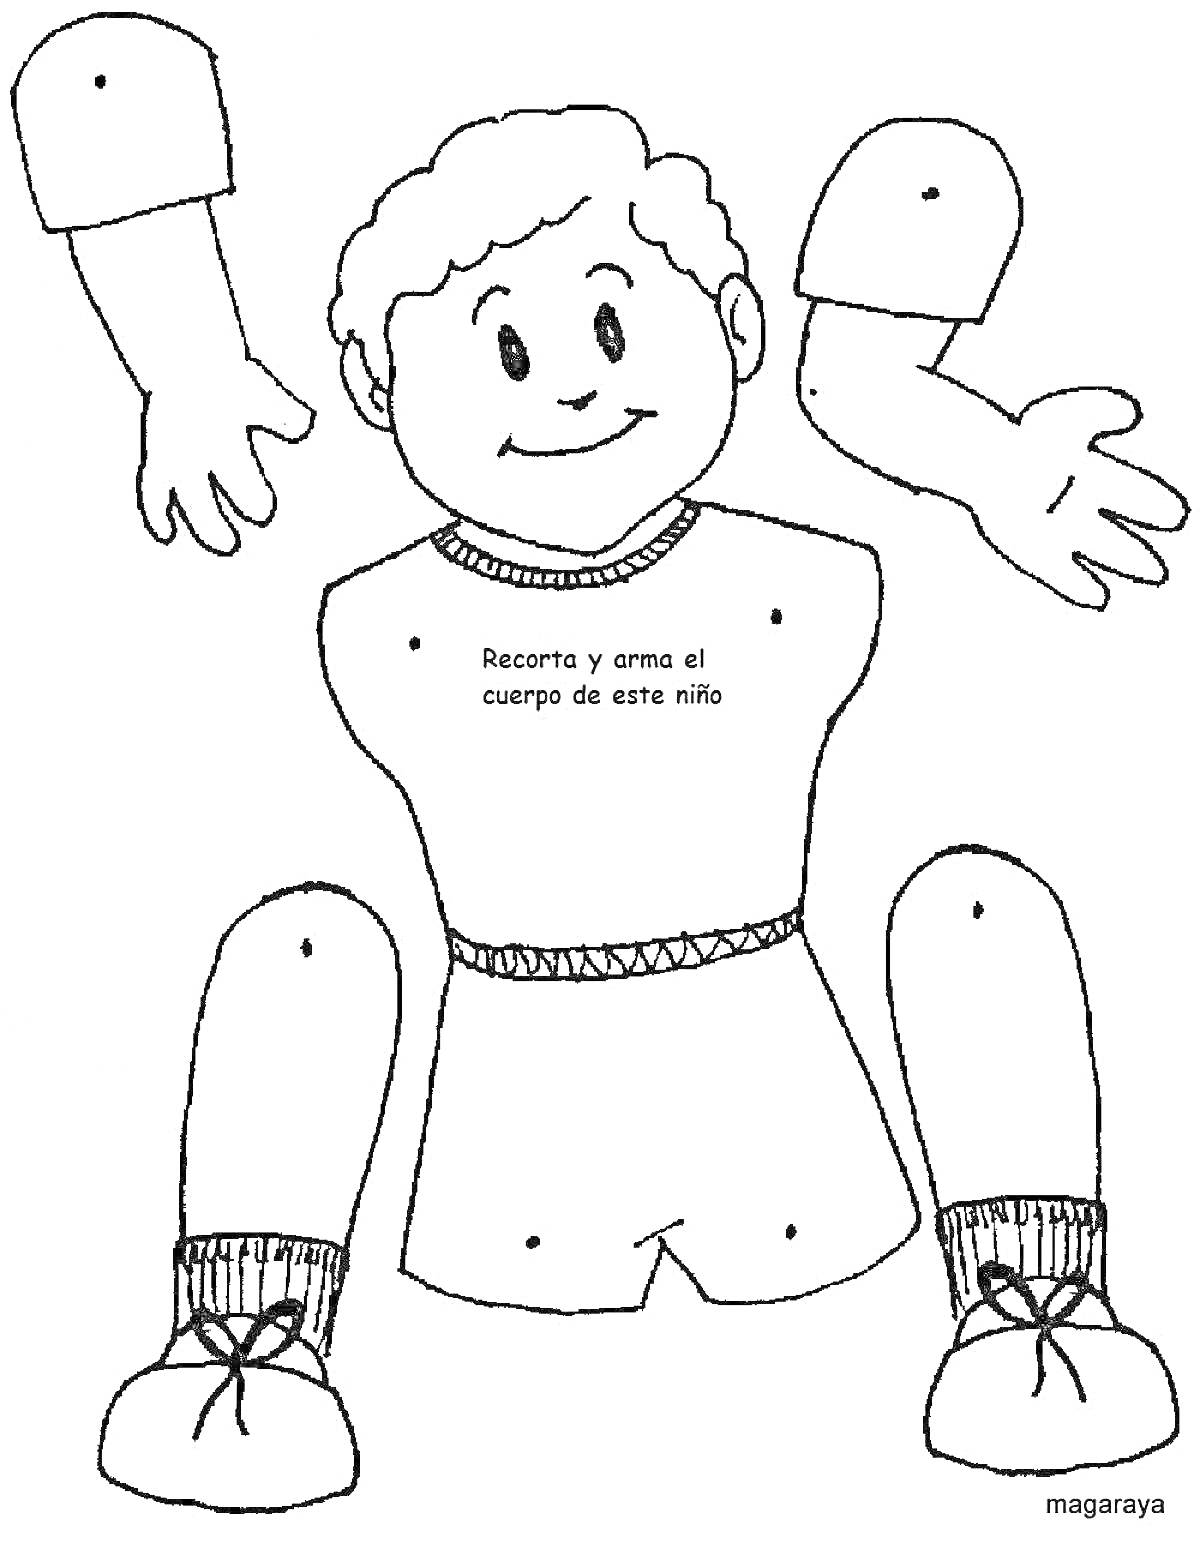 Раскраска с изображением частей тела ребёнка (голова, туловище, руки, ноги), для вырезания и сборки